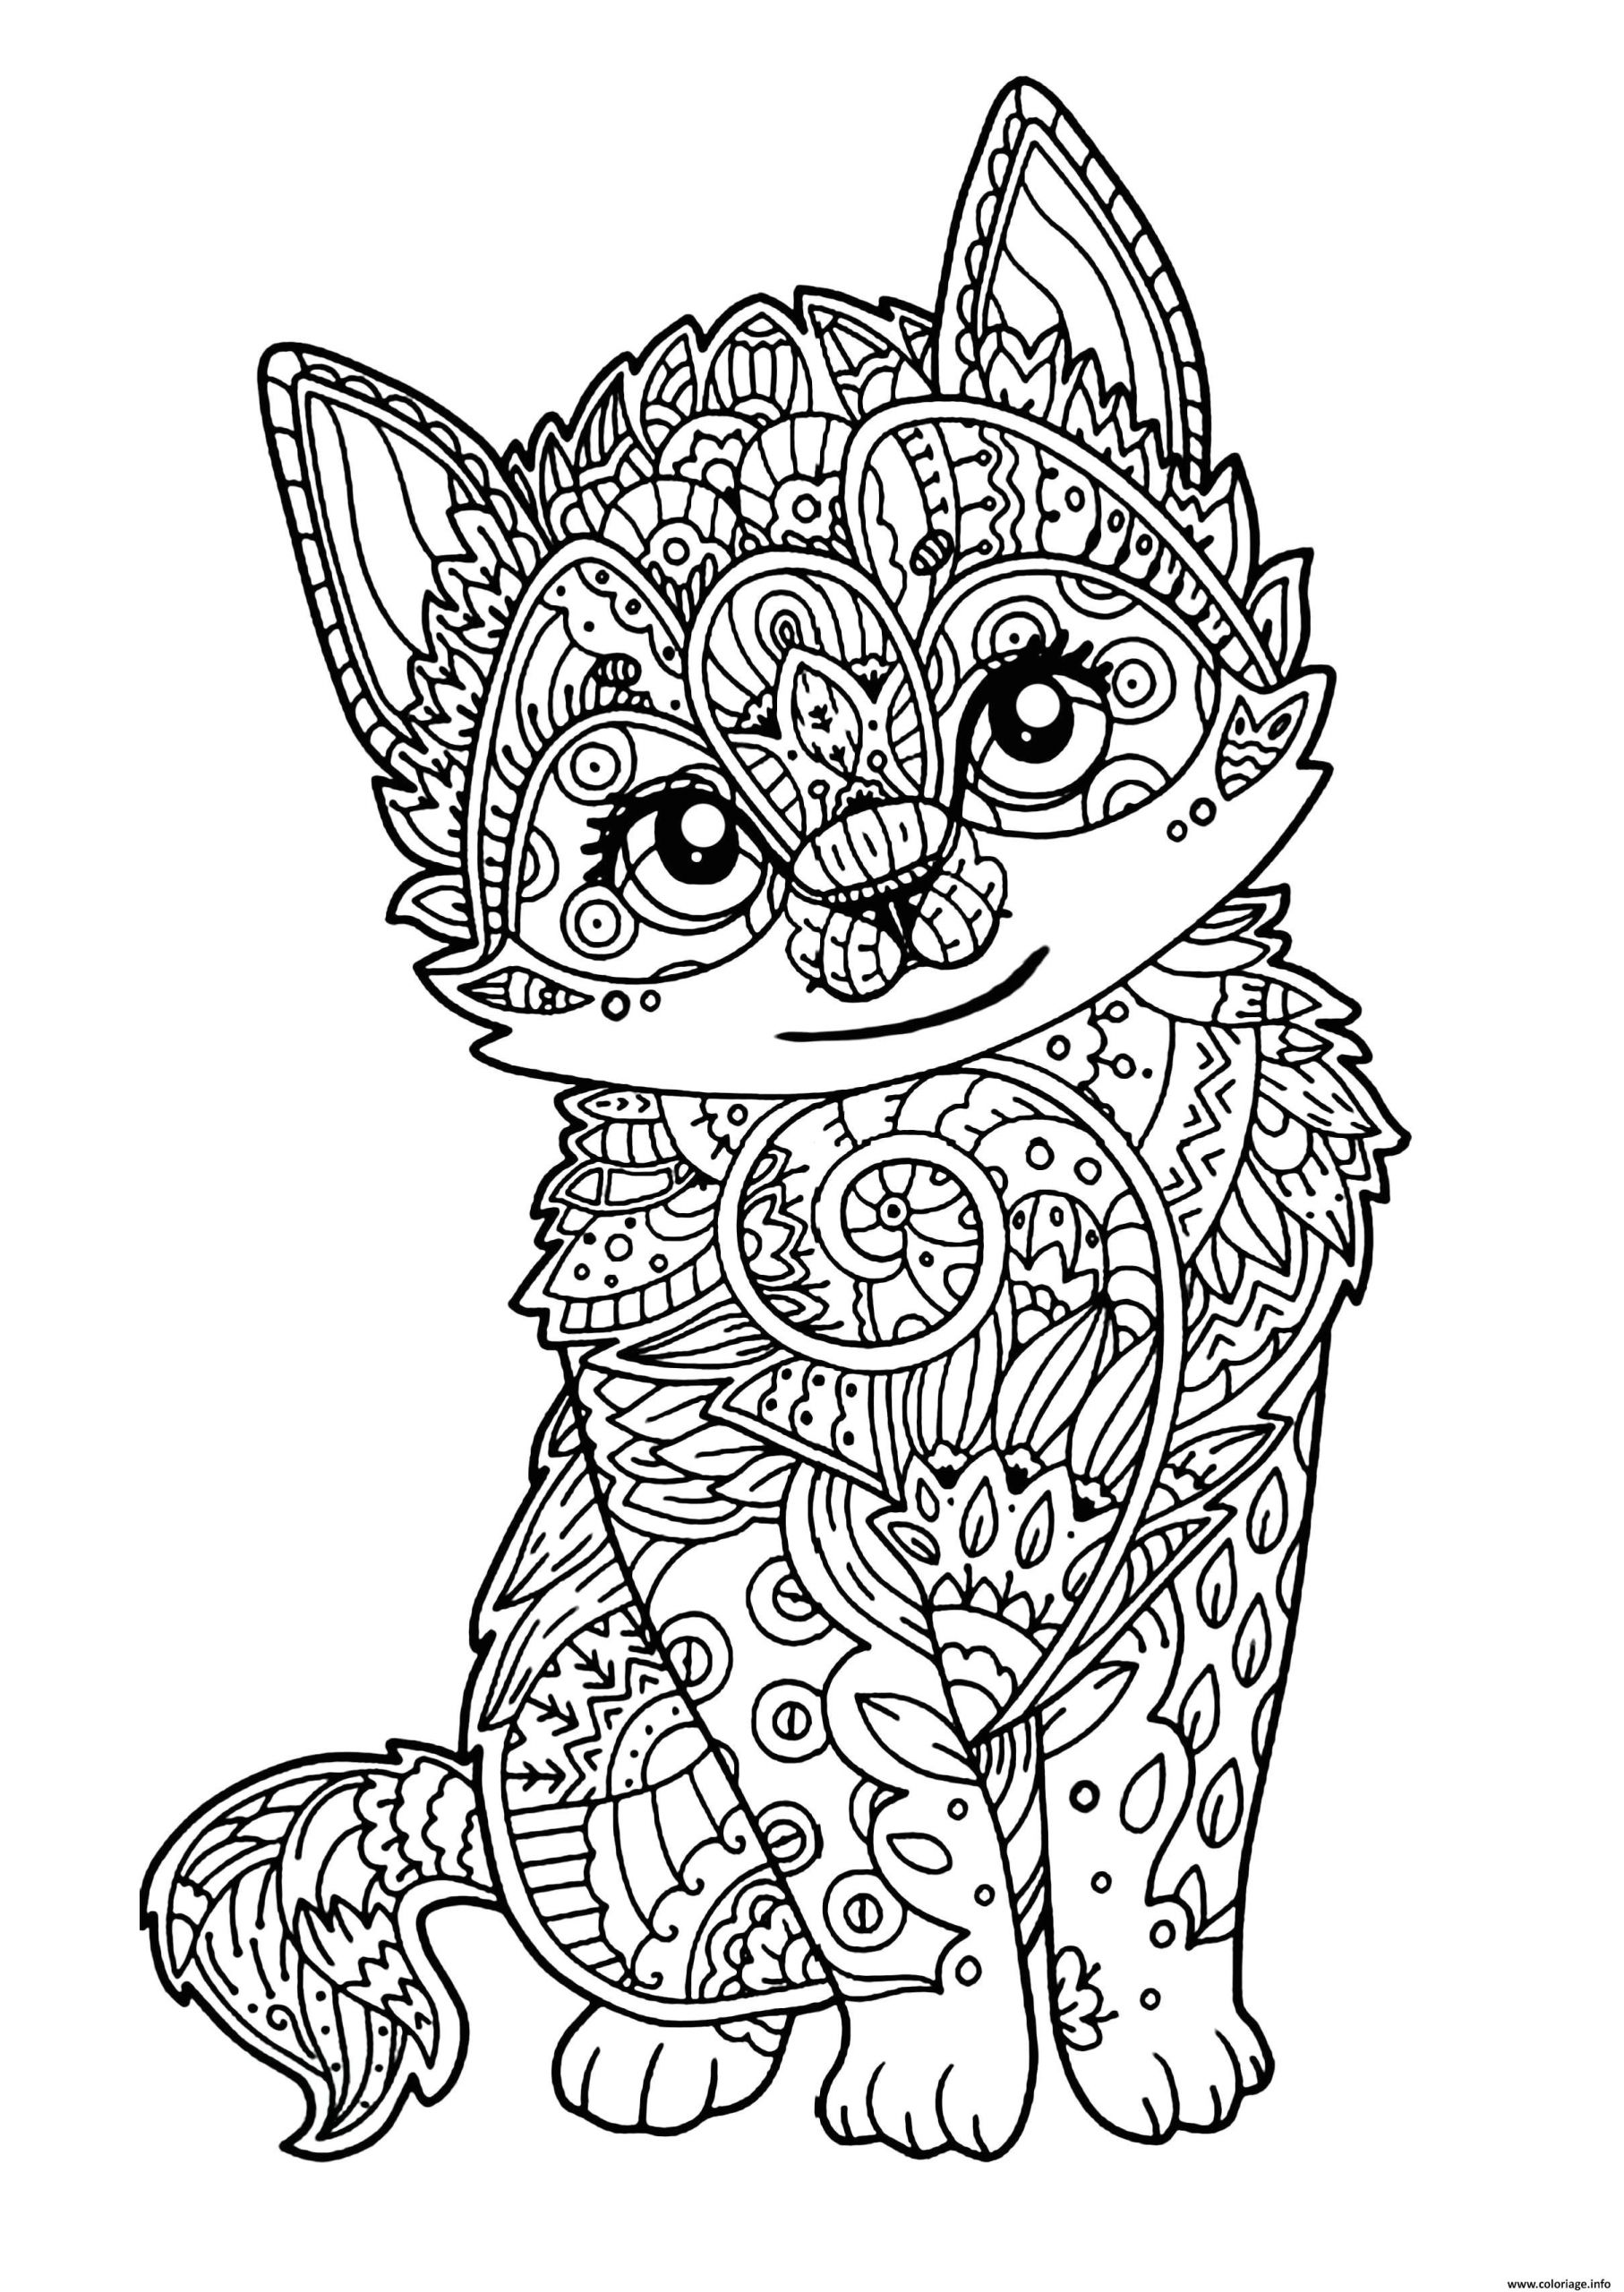 coloriage à imprimer difficile elegant coloriage chat mignon chaton adulte dessin avec coloriage imprimer of coloriage à imprimer difficile